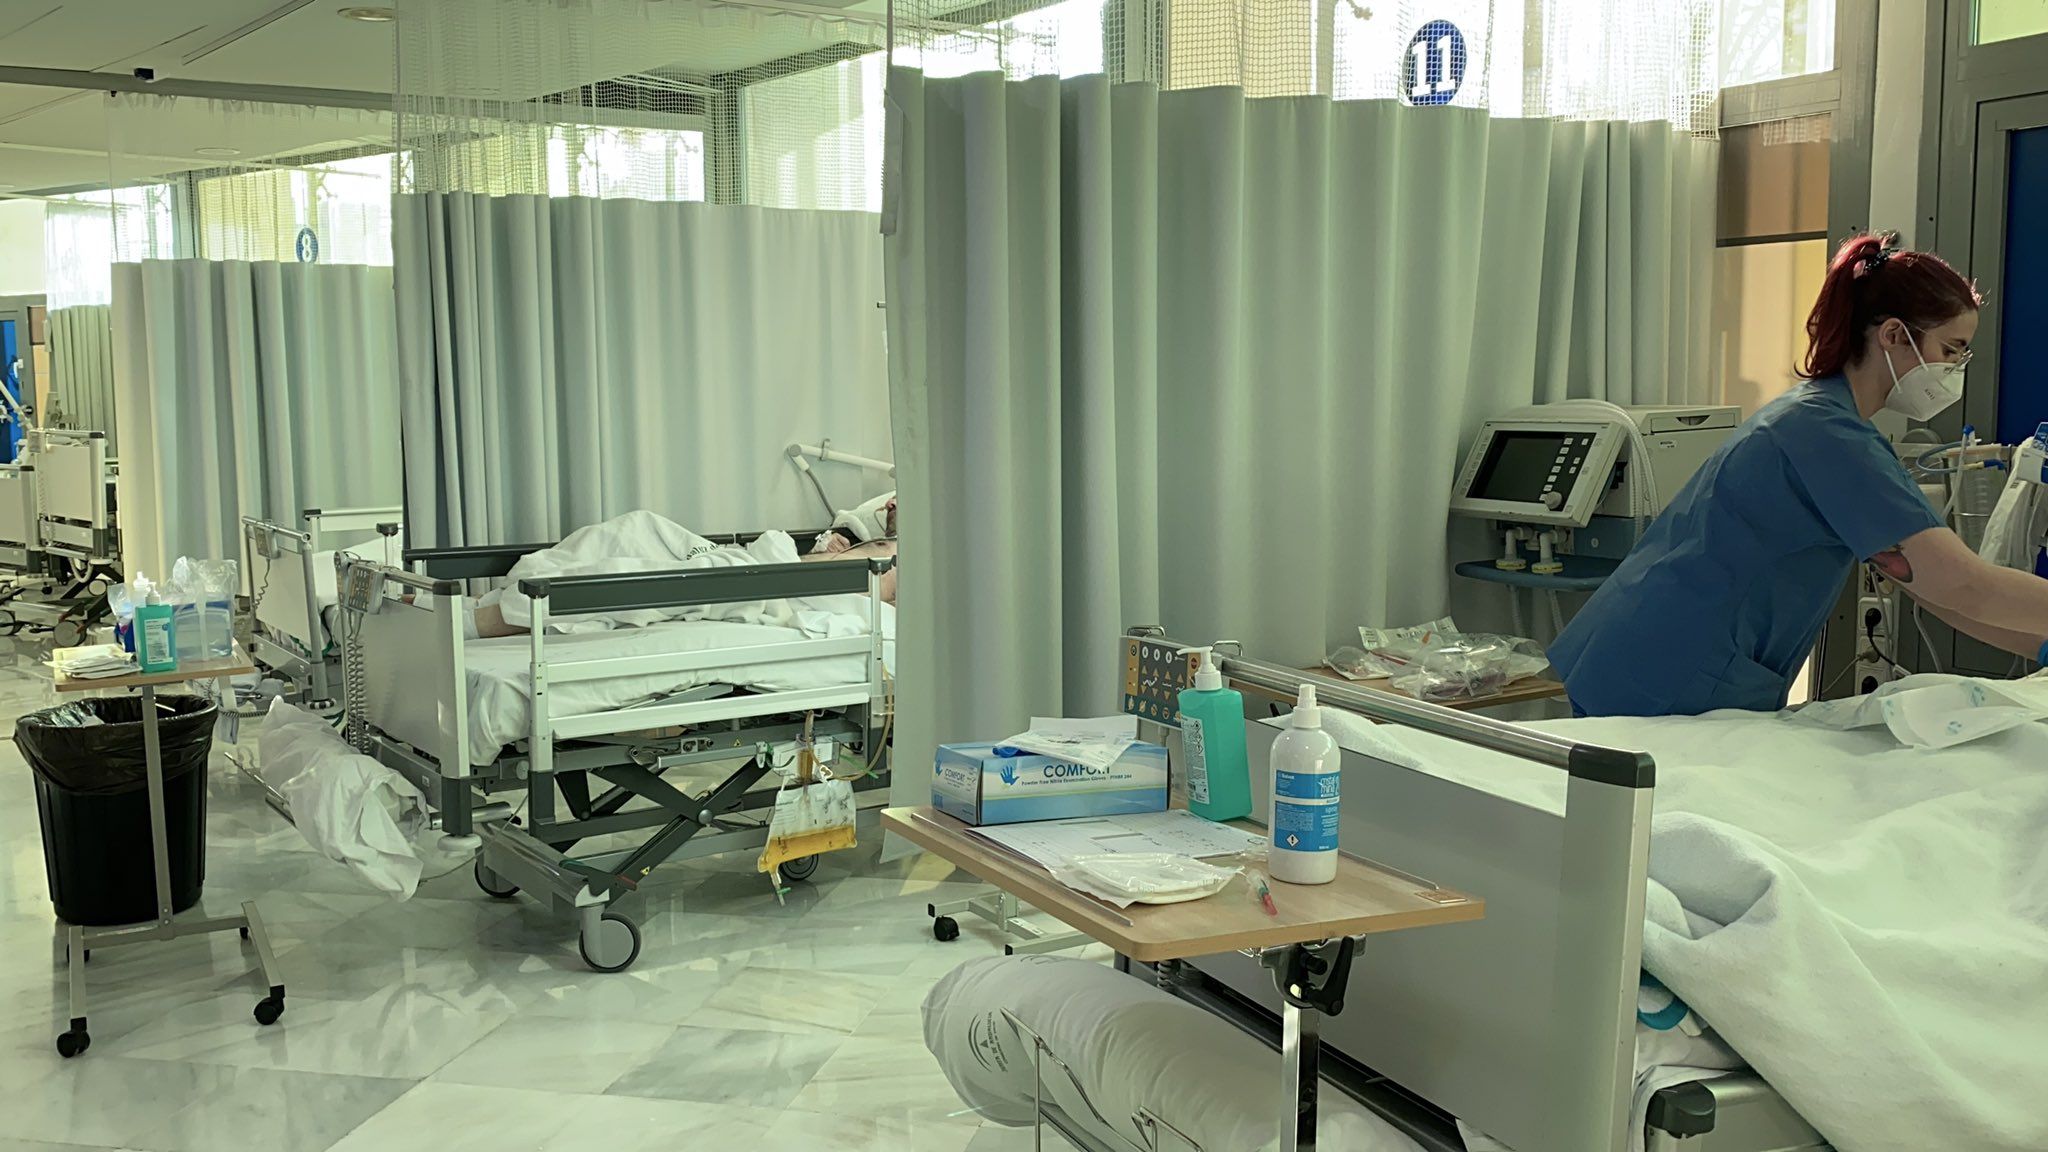 La UCI para covid del Hospital Carlos Haya de Málaga durante la pandemia. FOTO: SAS